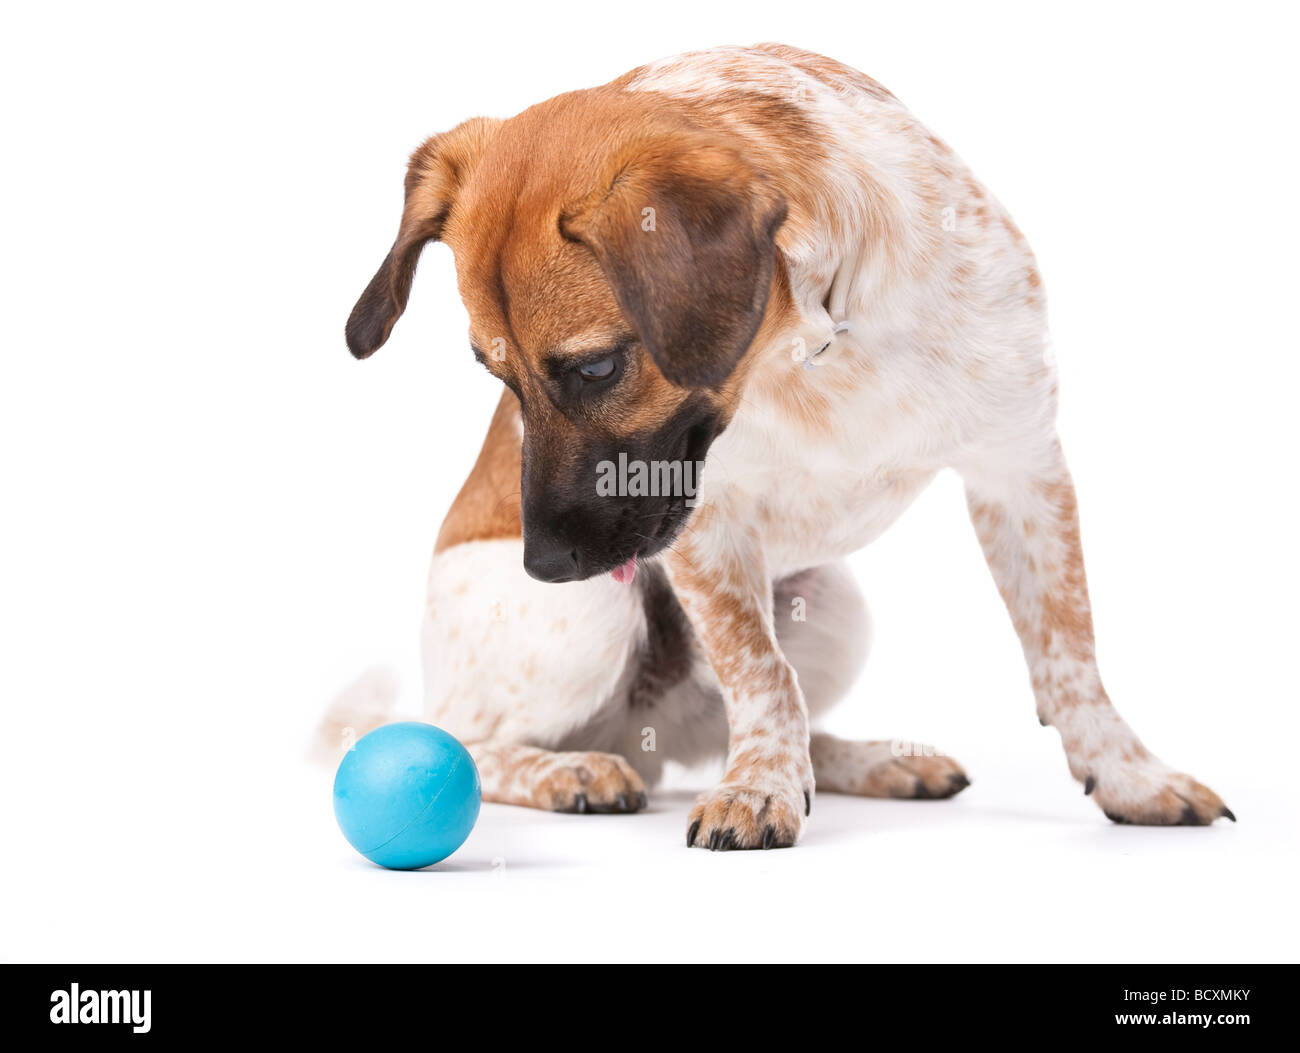 Kleine weißer und brauner Hund konzentriert sich stark auf einen blauen Ball Studio gedreht isoliert auf weiß Stockfoto